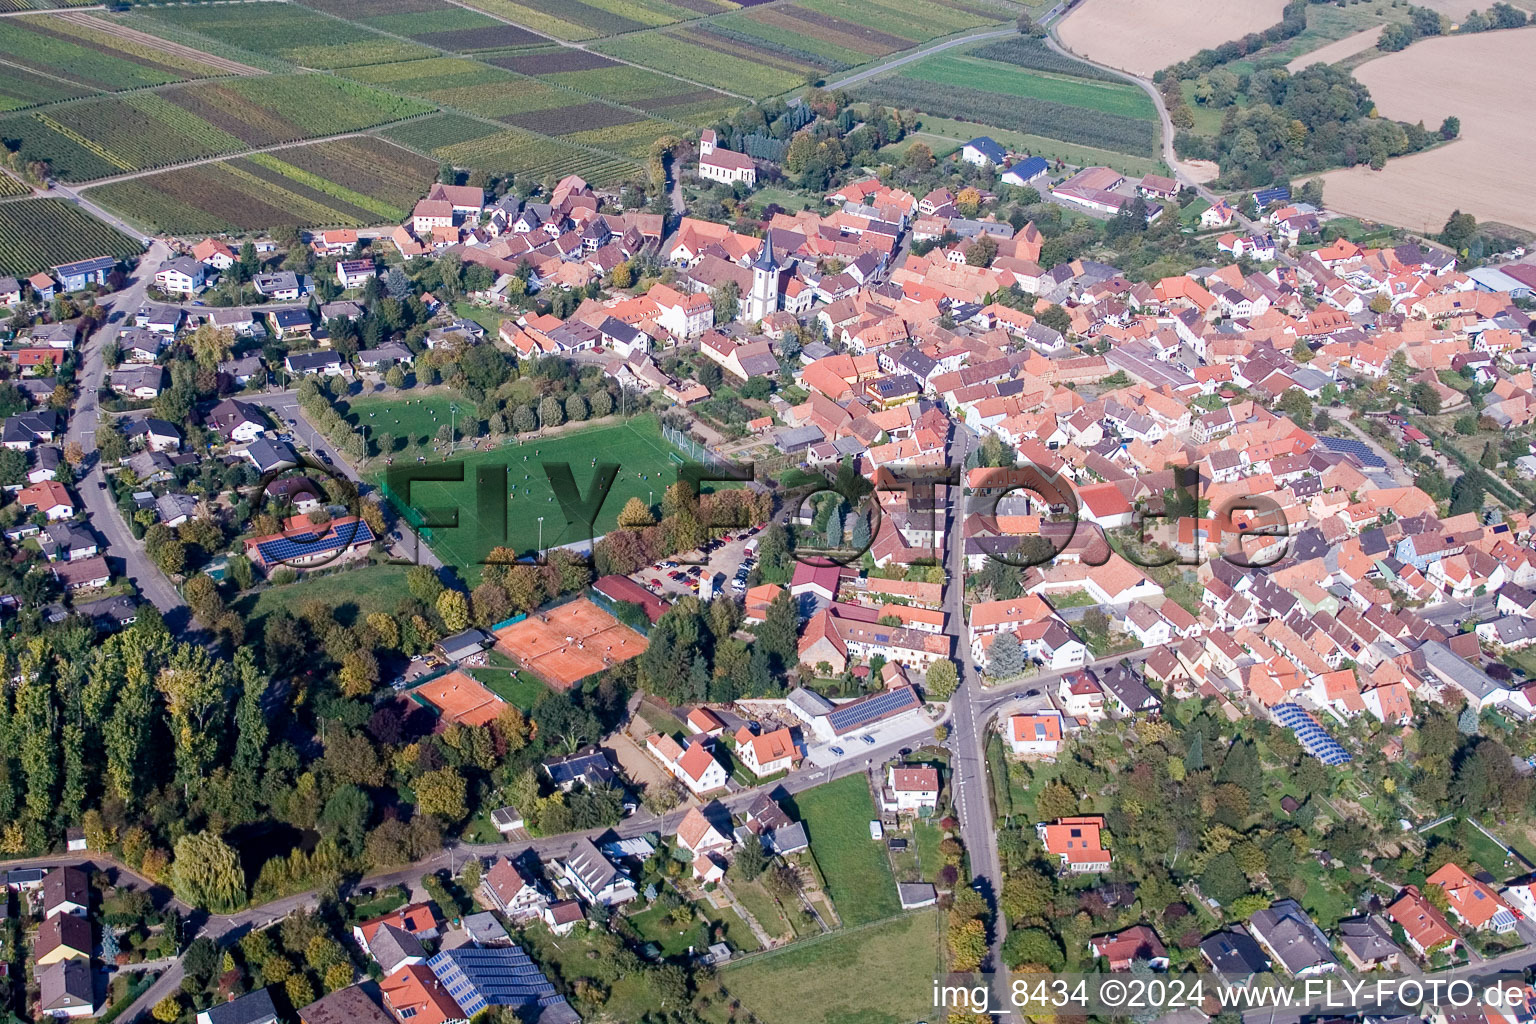 Village view in the district Moerzheim in Landau in der Pfalz in the state Rhineland-Palatinate, Germany